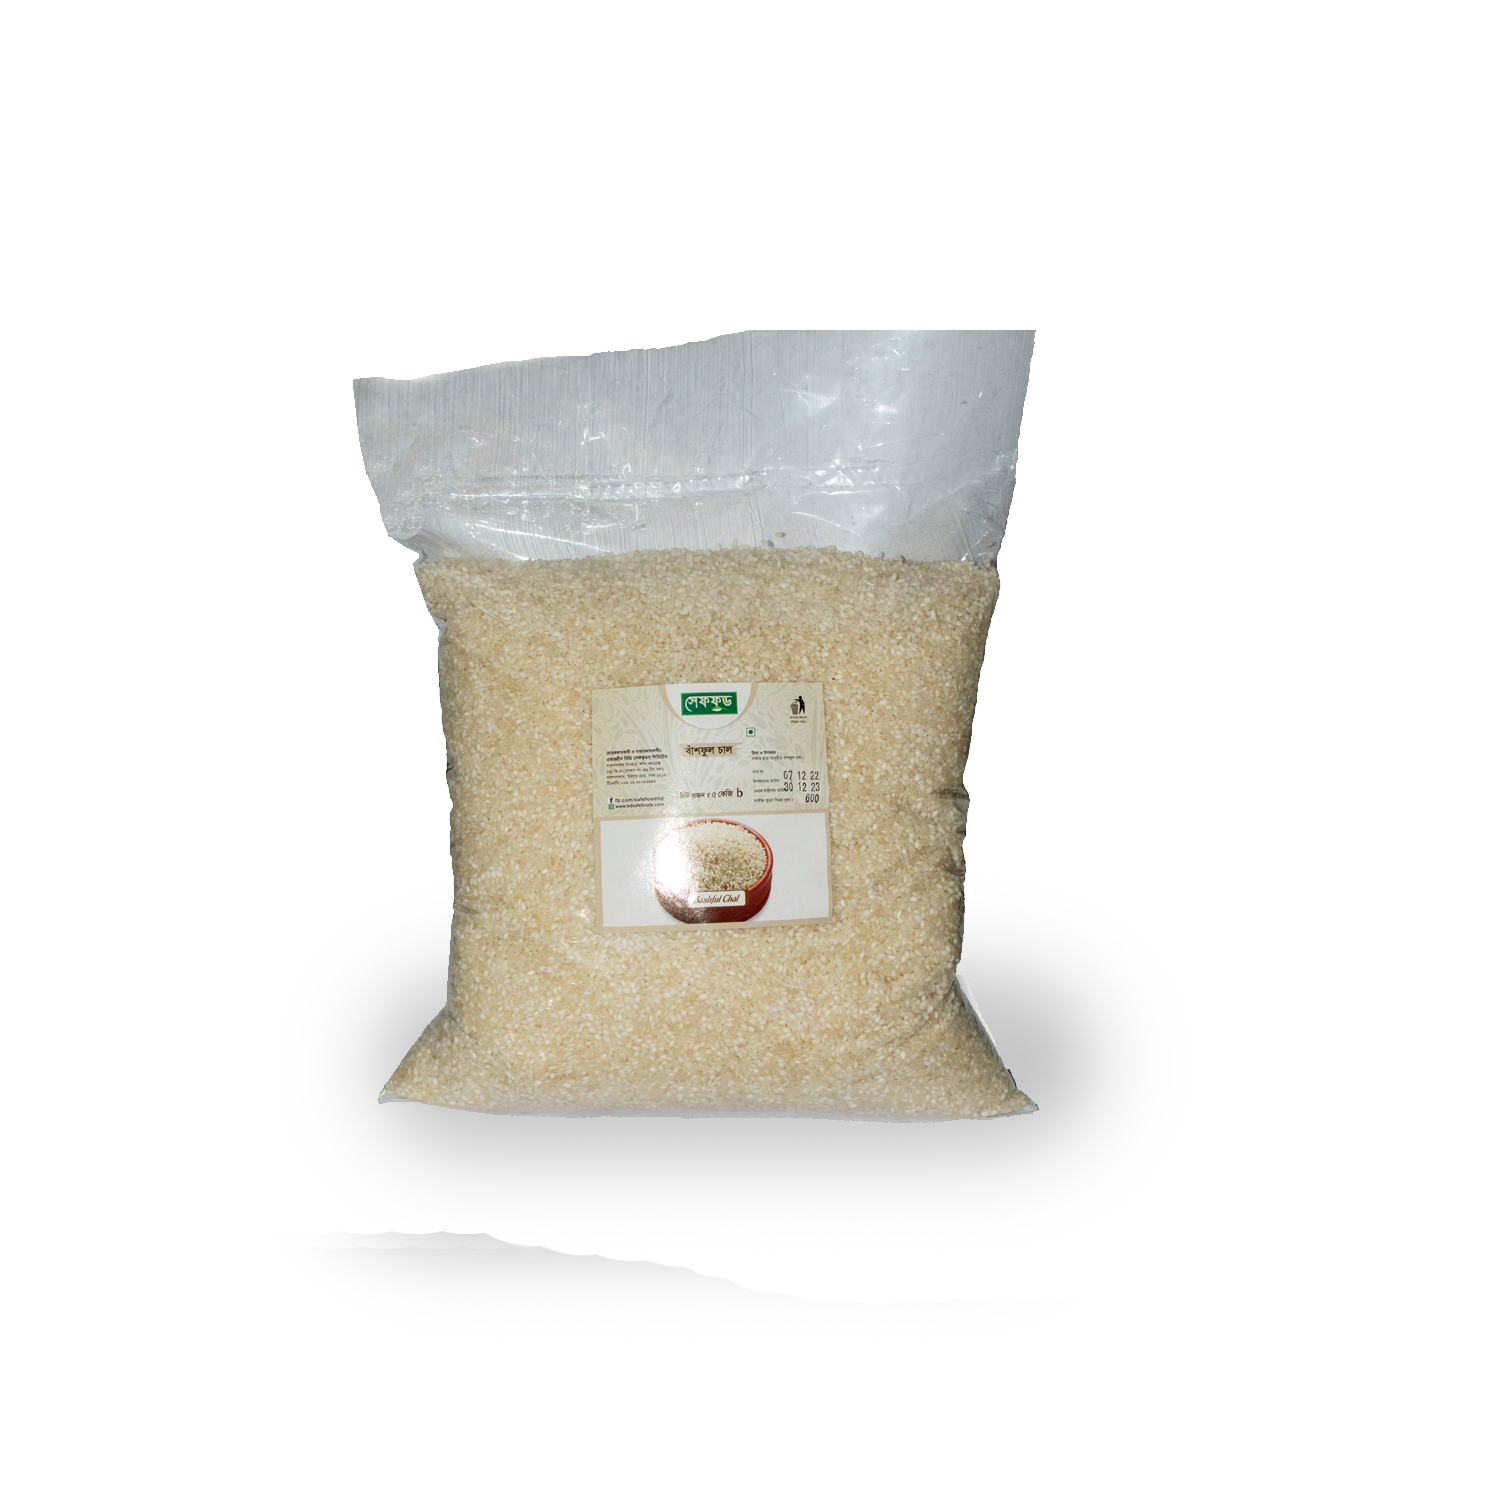 Basful Rice (সুগন্ধী বাশফুল চাল)